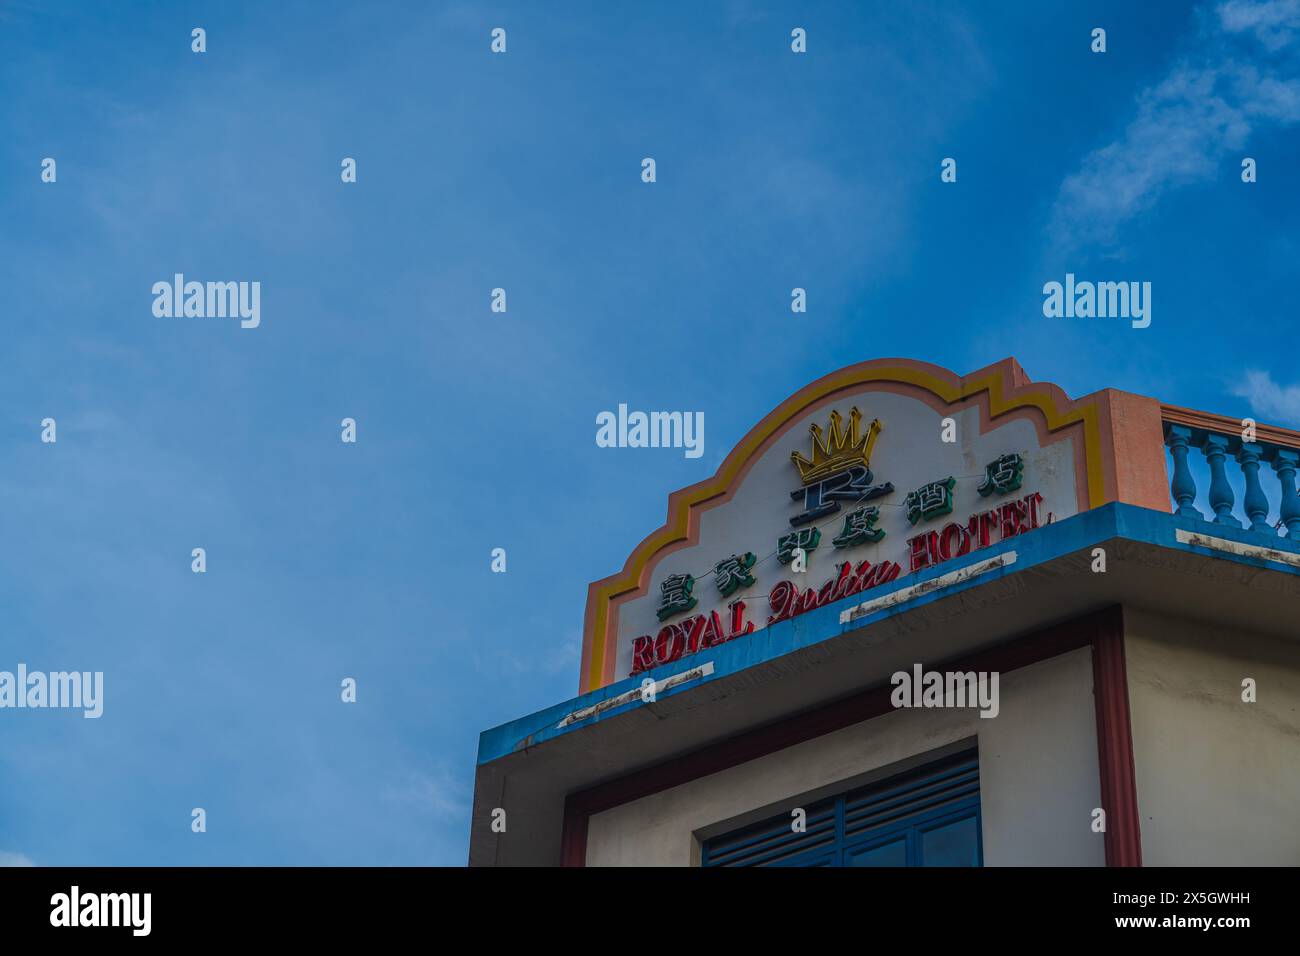 Immagine vivida della segnaletica del Royal Garden Hotel montata su una facciata di un edificio, evidenziata su un cielo blu limpido con soffici nuvole bianche. Foto Stock